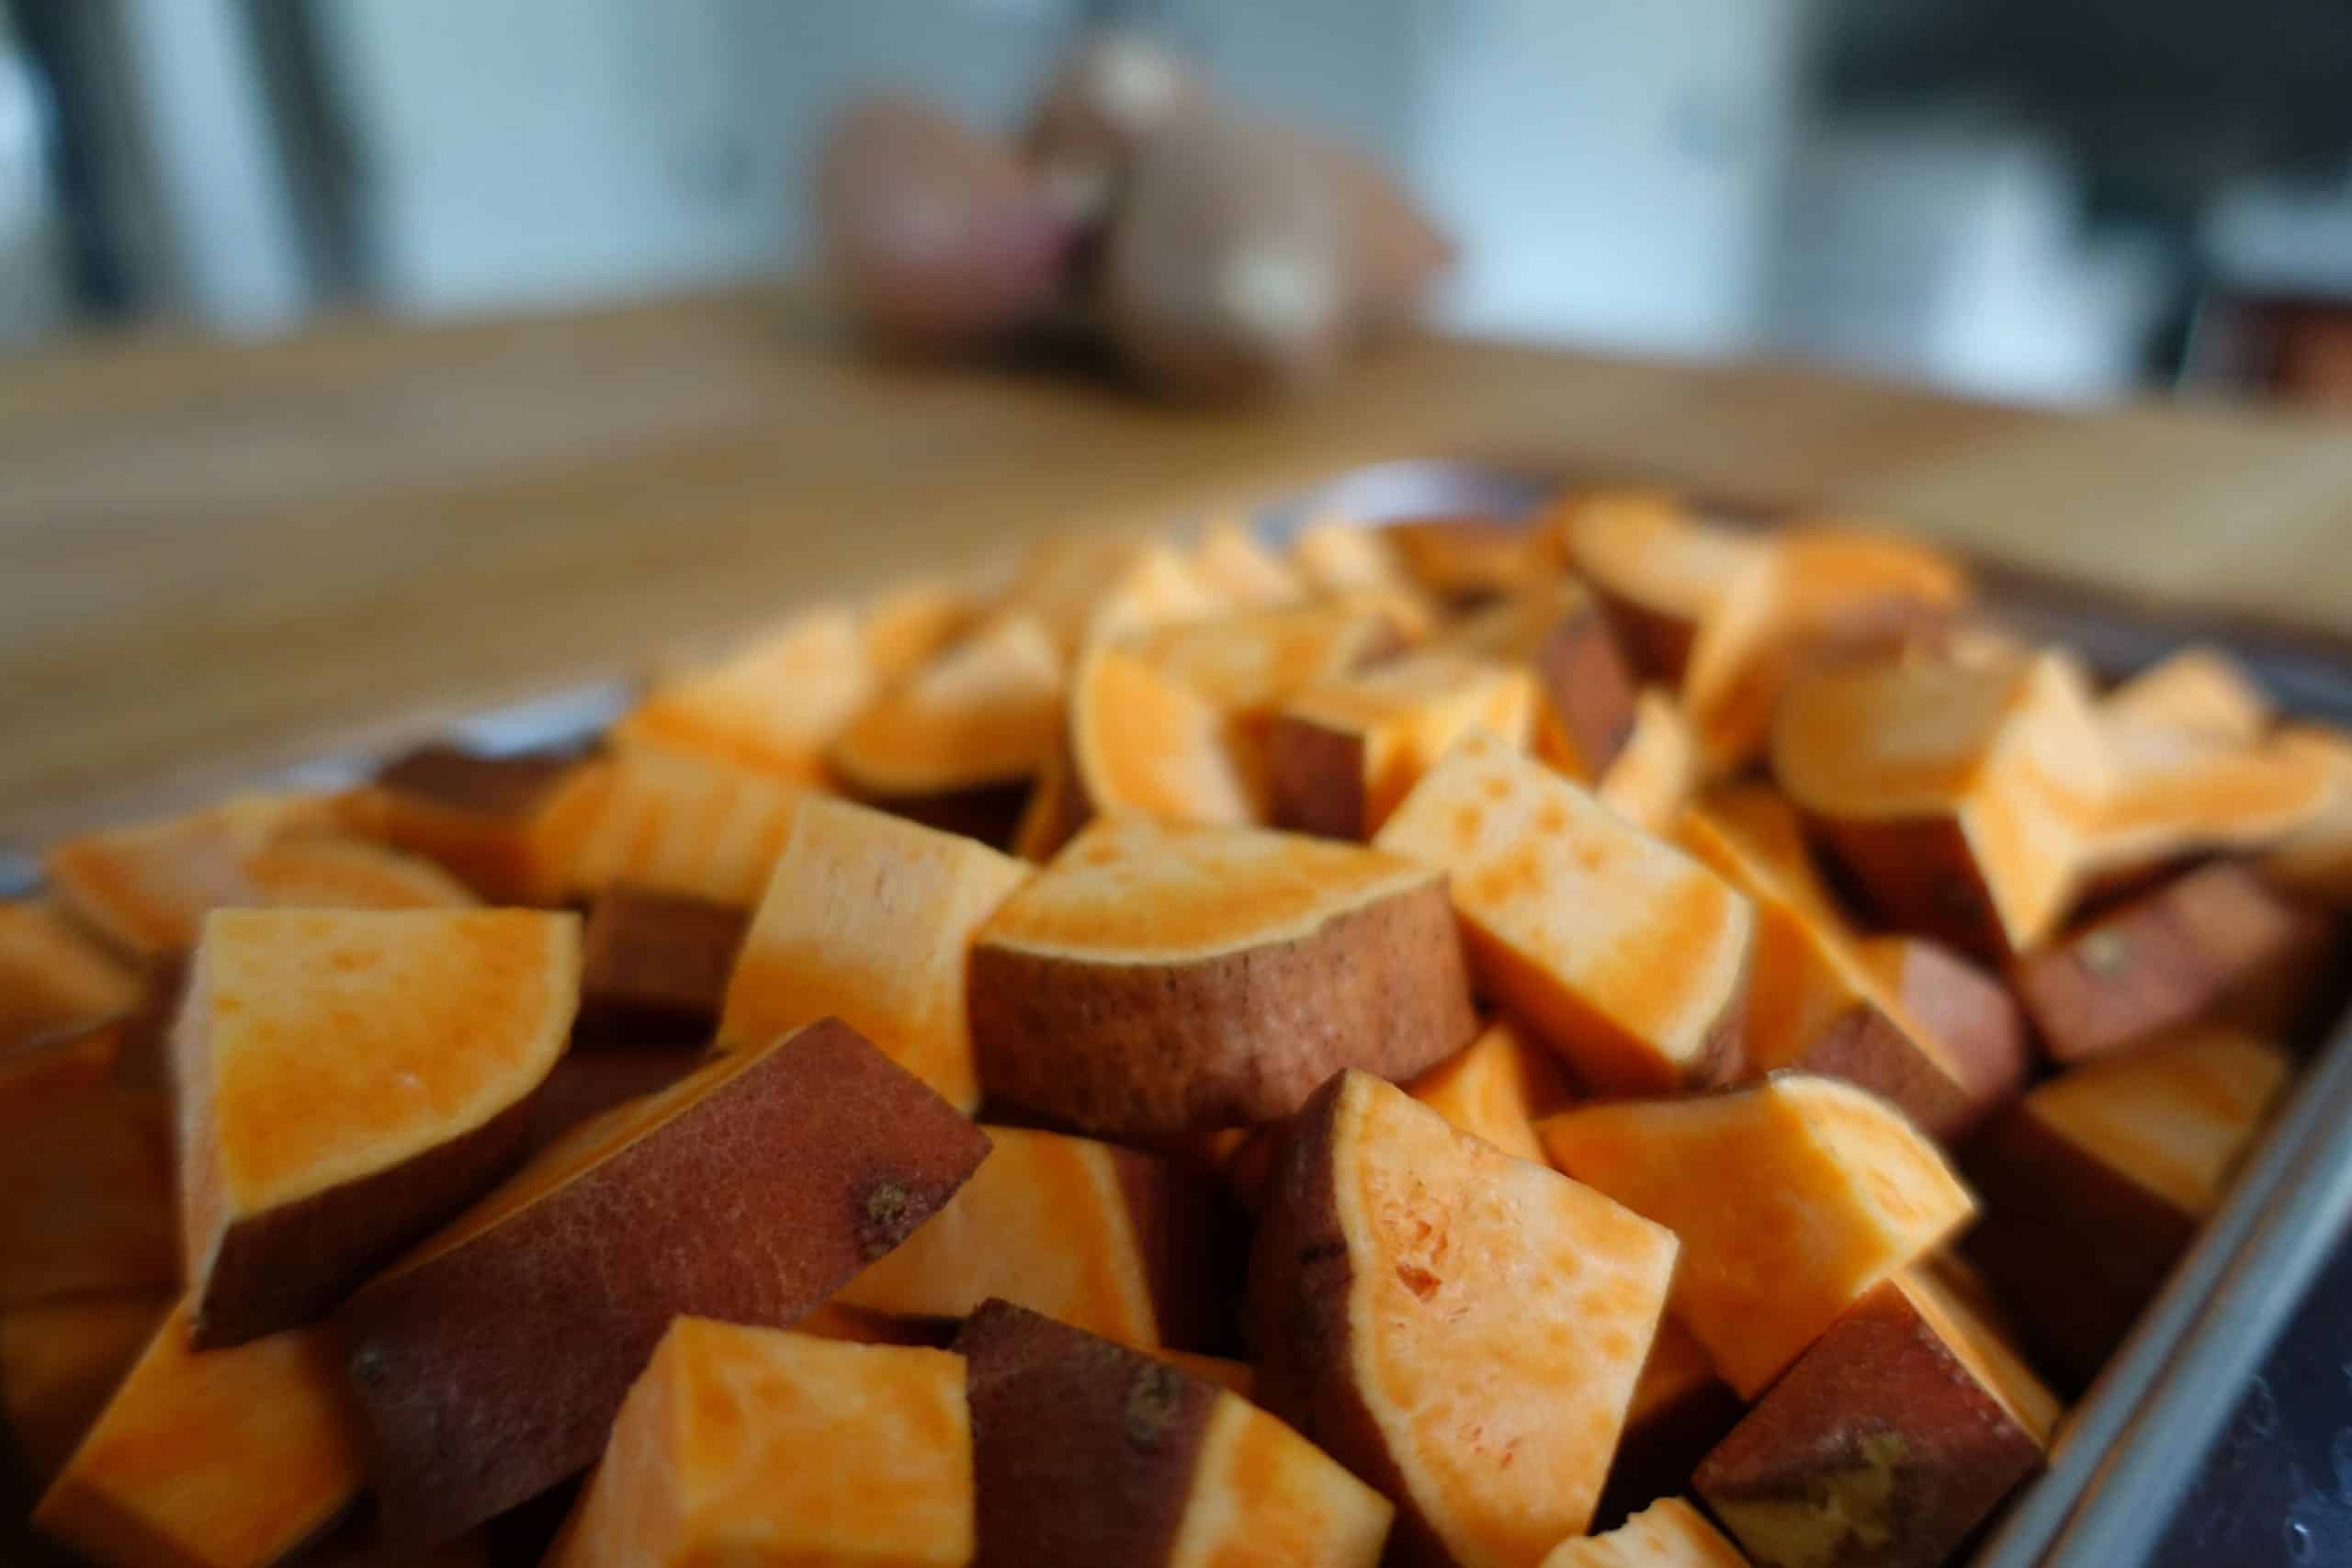 diced sweet potatoes same shape and size